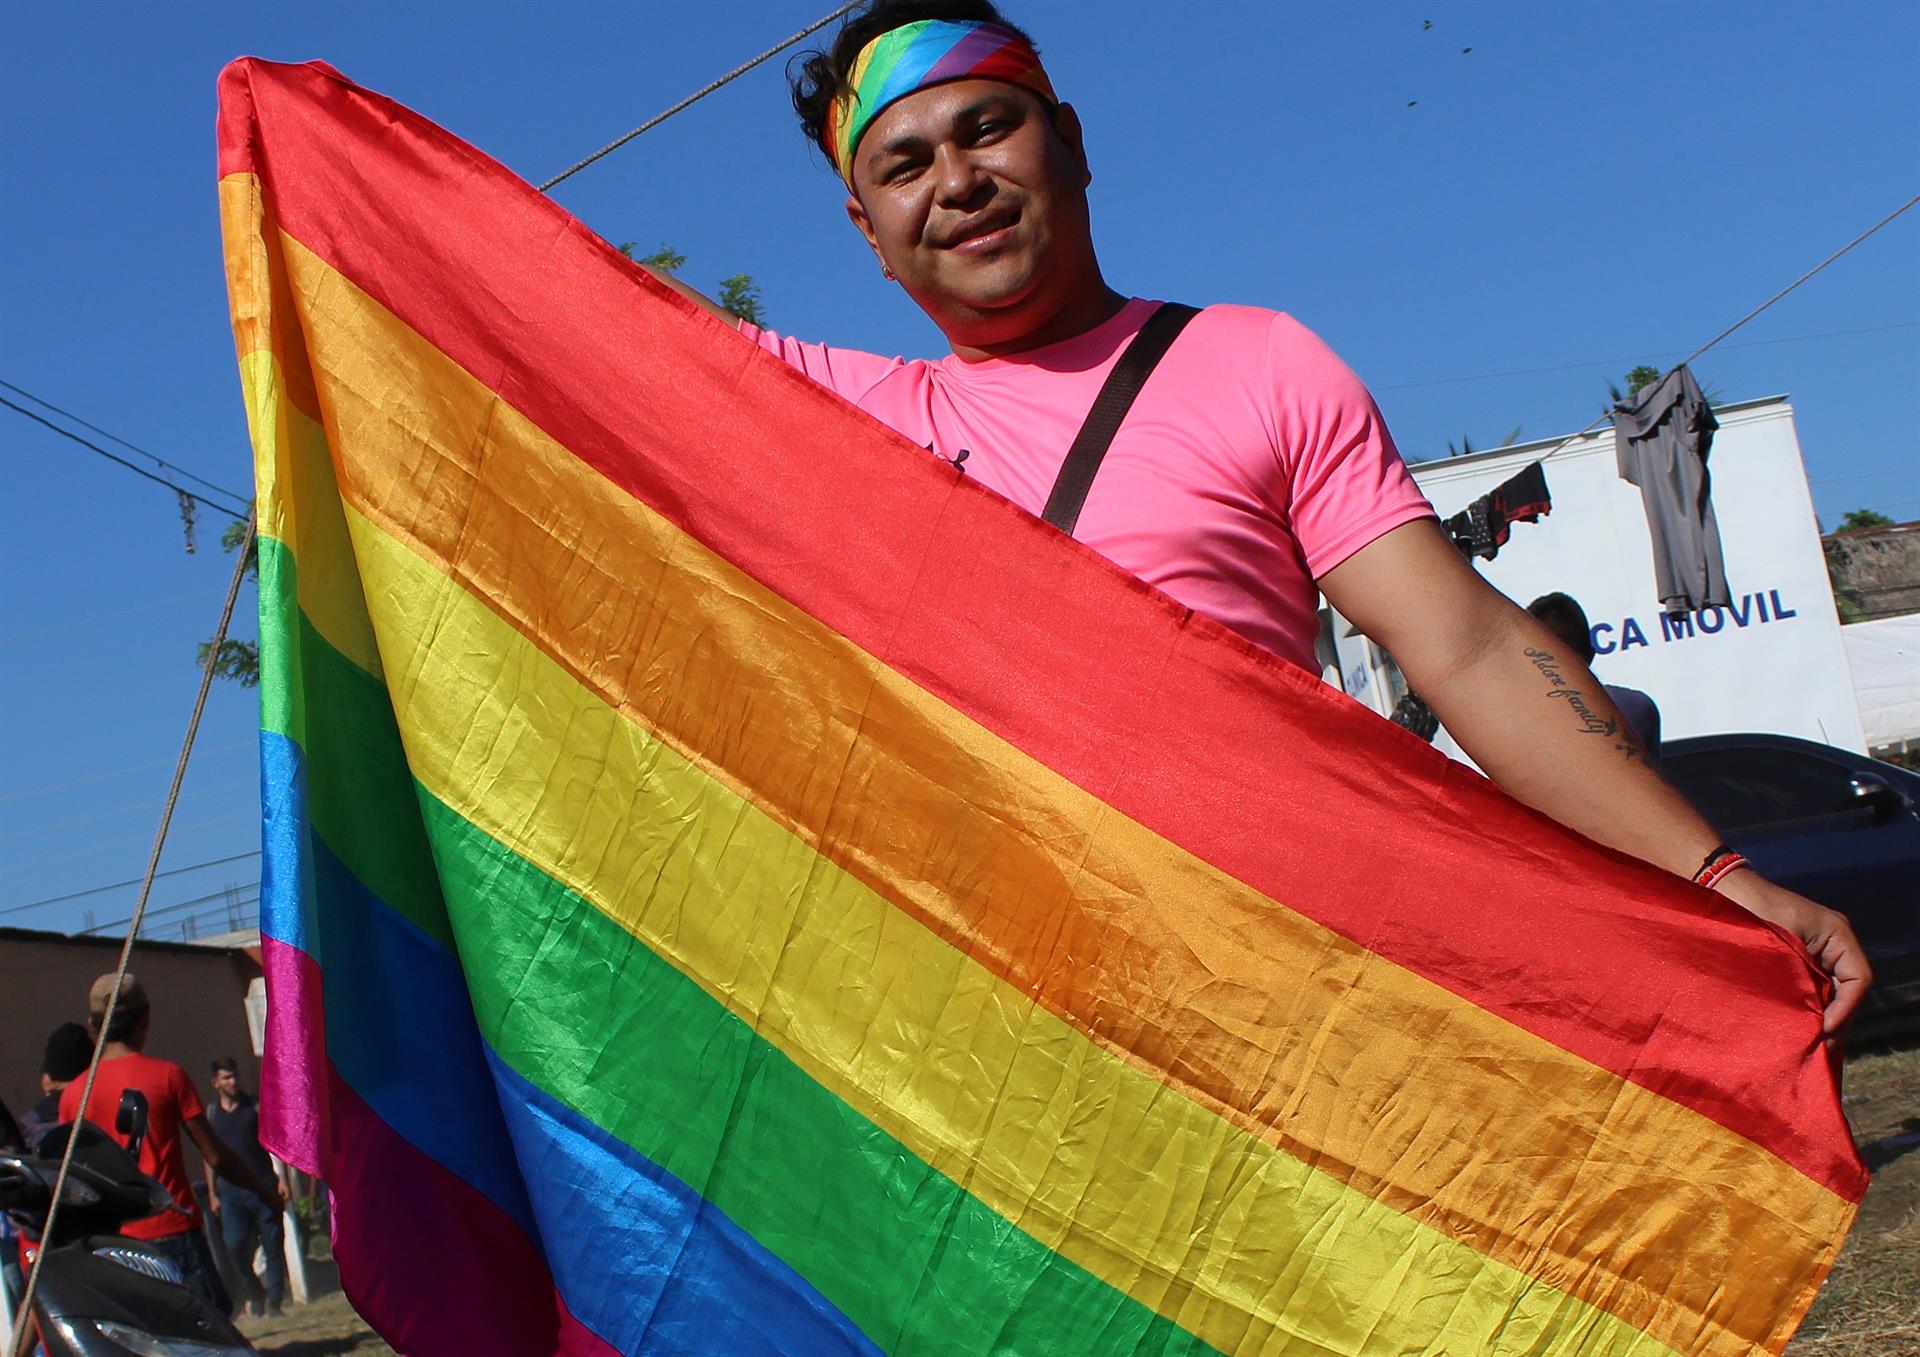 Una persona posa con la bandera de arcoíris, símbolo de la comunidad LGBT. Imagen de archivo. EFE/ Pedro Cortés
